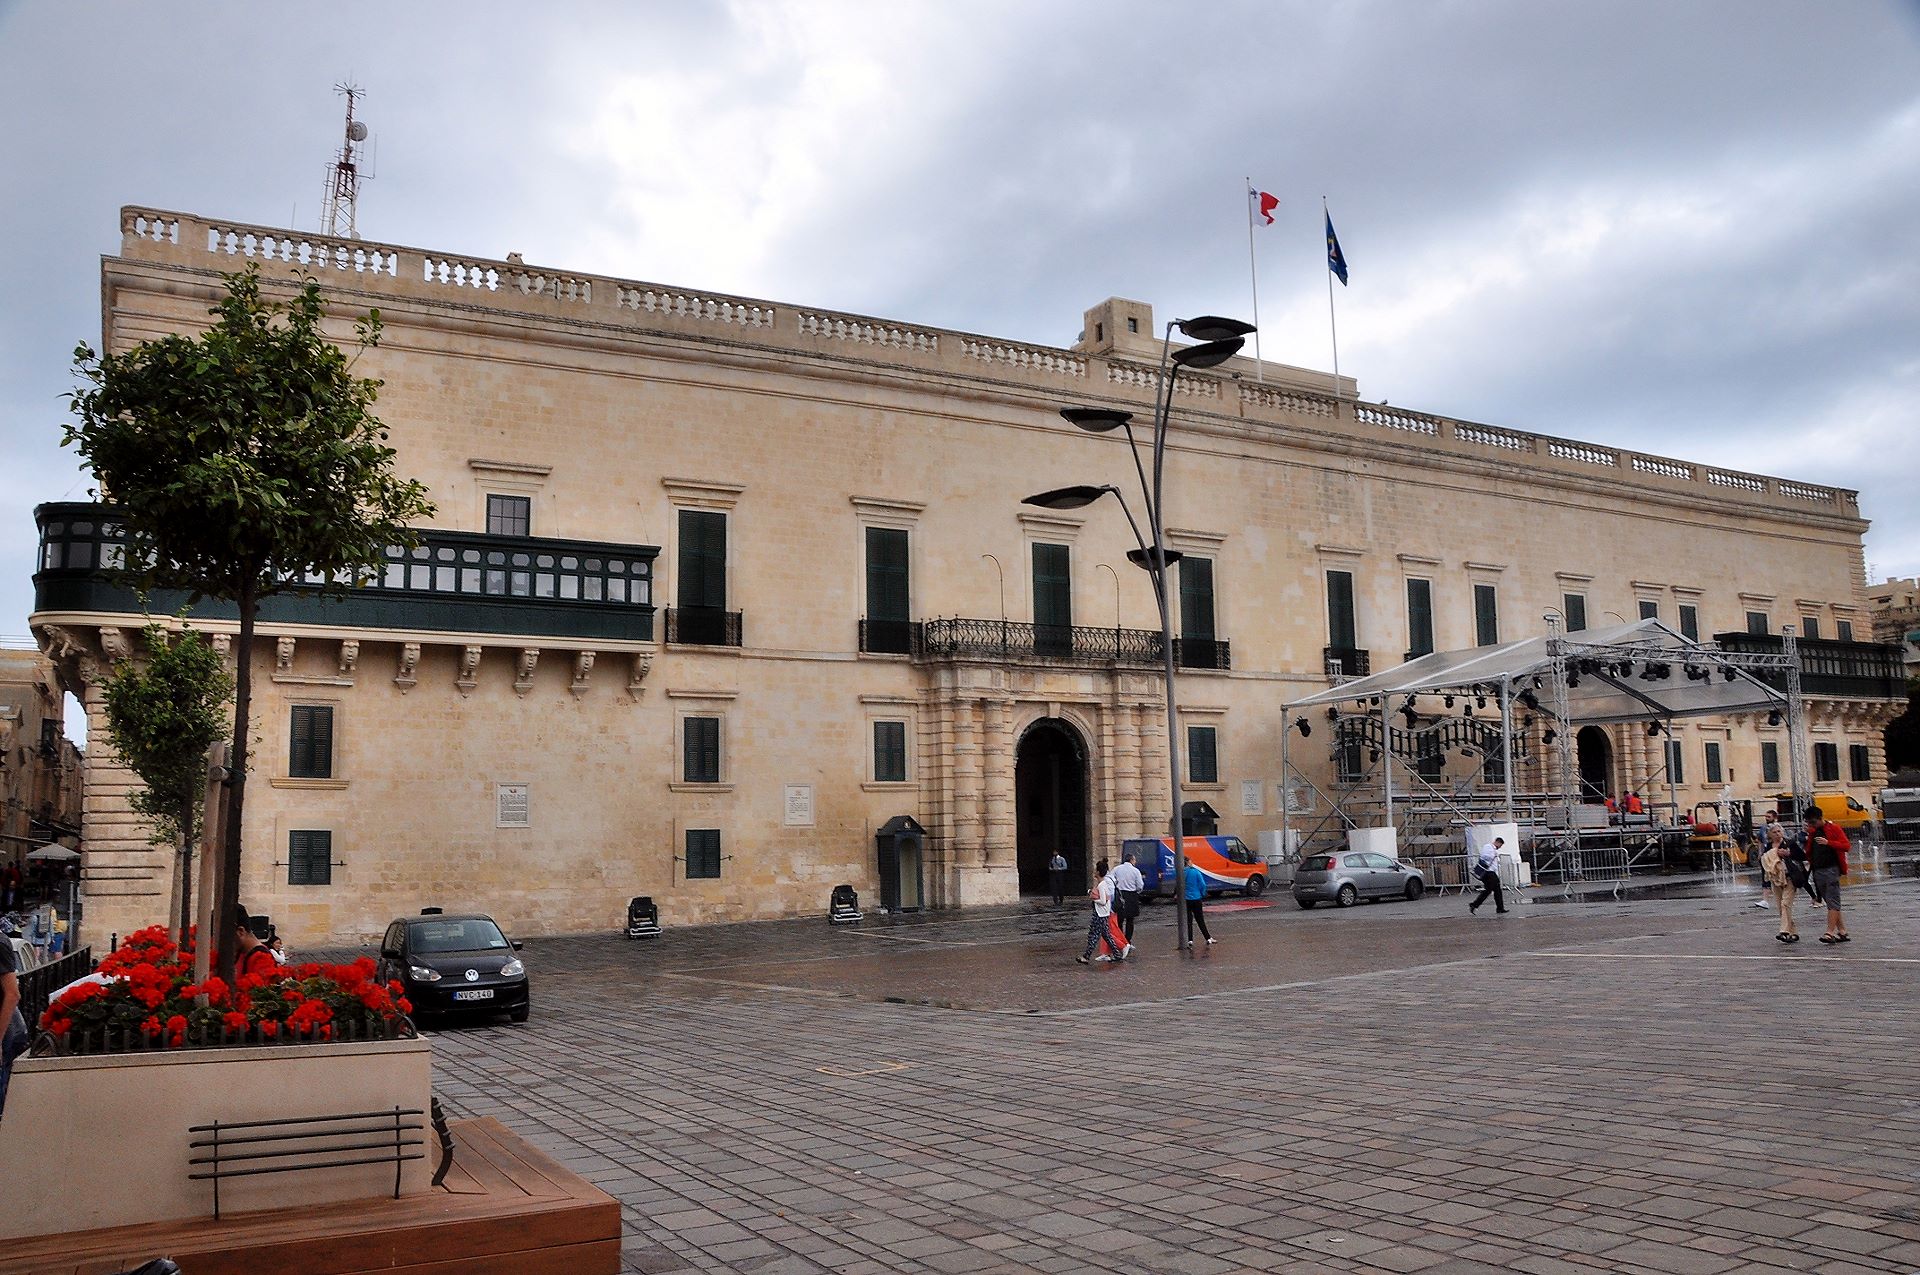 Der Palast des Großmeisters vom Malteserorden, heute Sitz des Staatspräsidenten